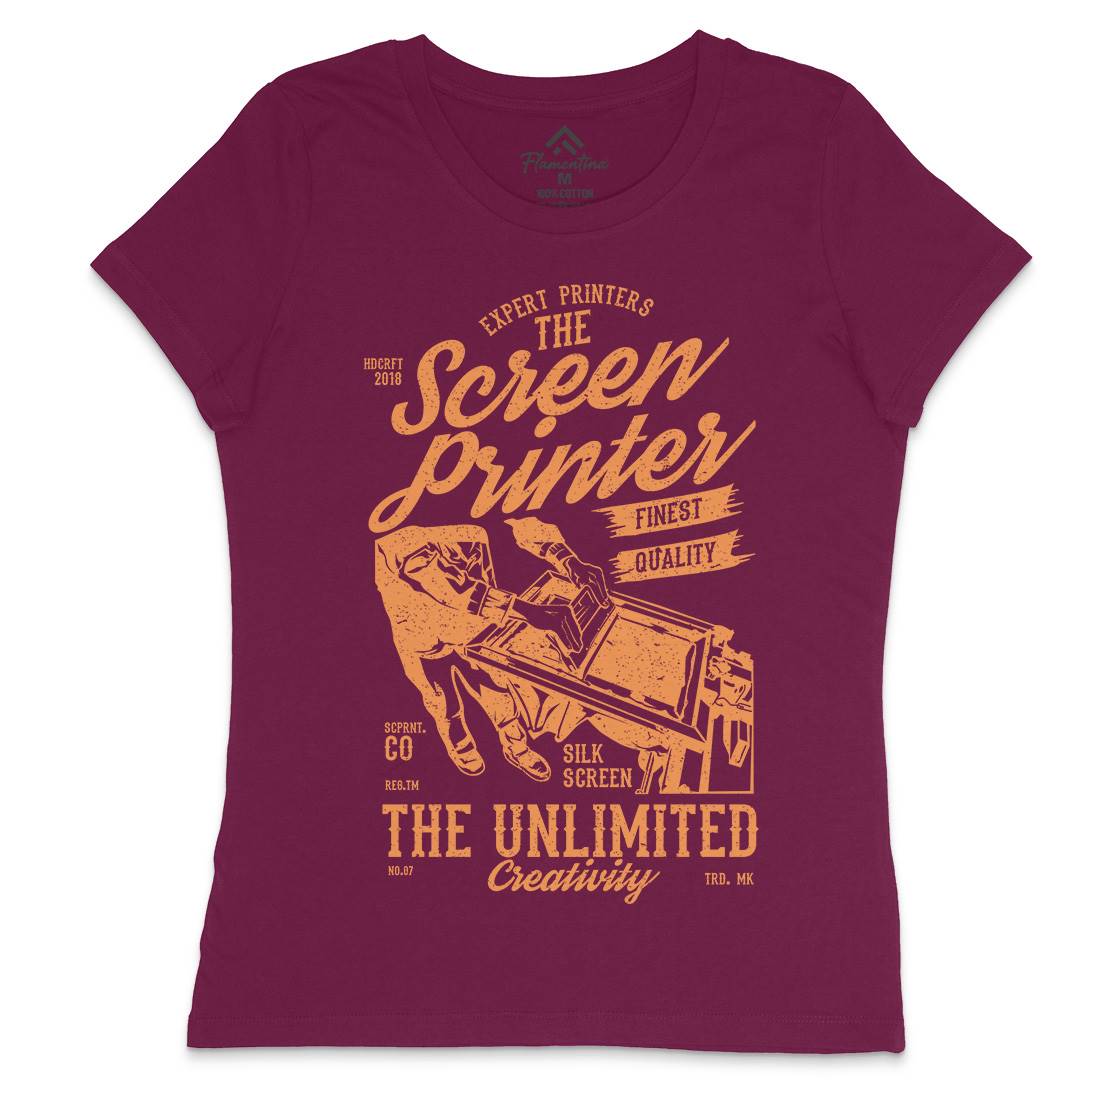 Screen Printer Womens Crew Neck T-Shirt Work A775